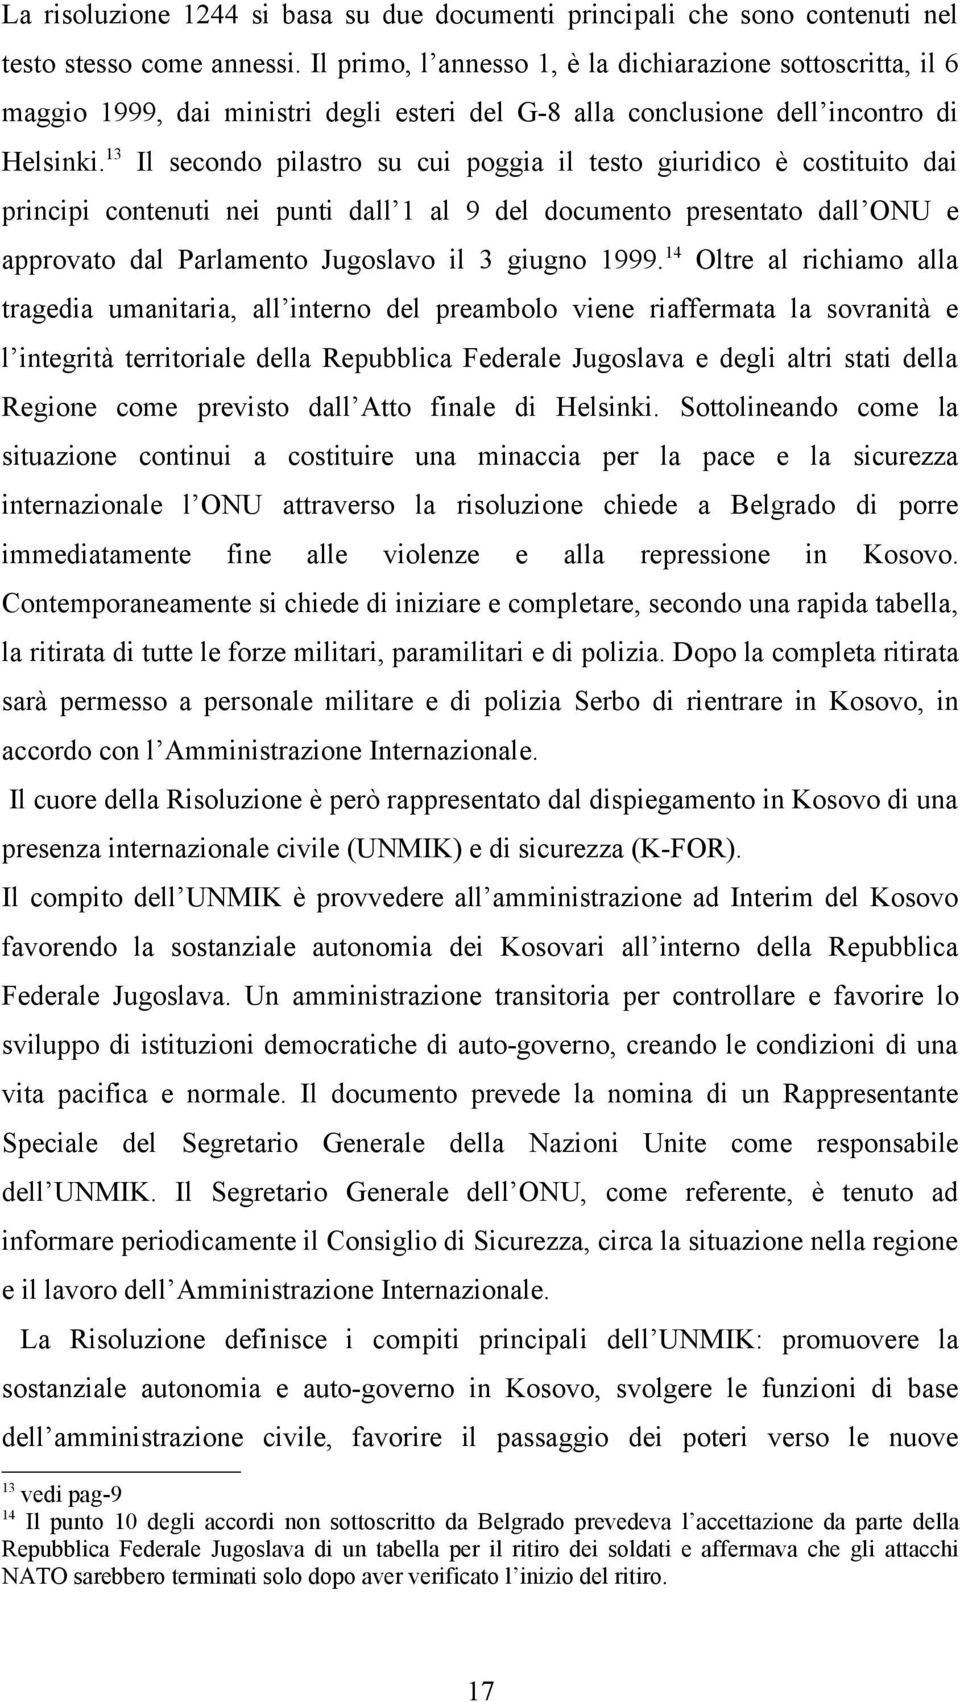 13 Il secondo pilastro su cui poggia il testo giuridico è costituito dai principi contenuti nei punti dall 1 al 9 del documento presentato dall ONU e approvato dal Parlamento Jugoslavo il 3 giugno